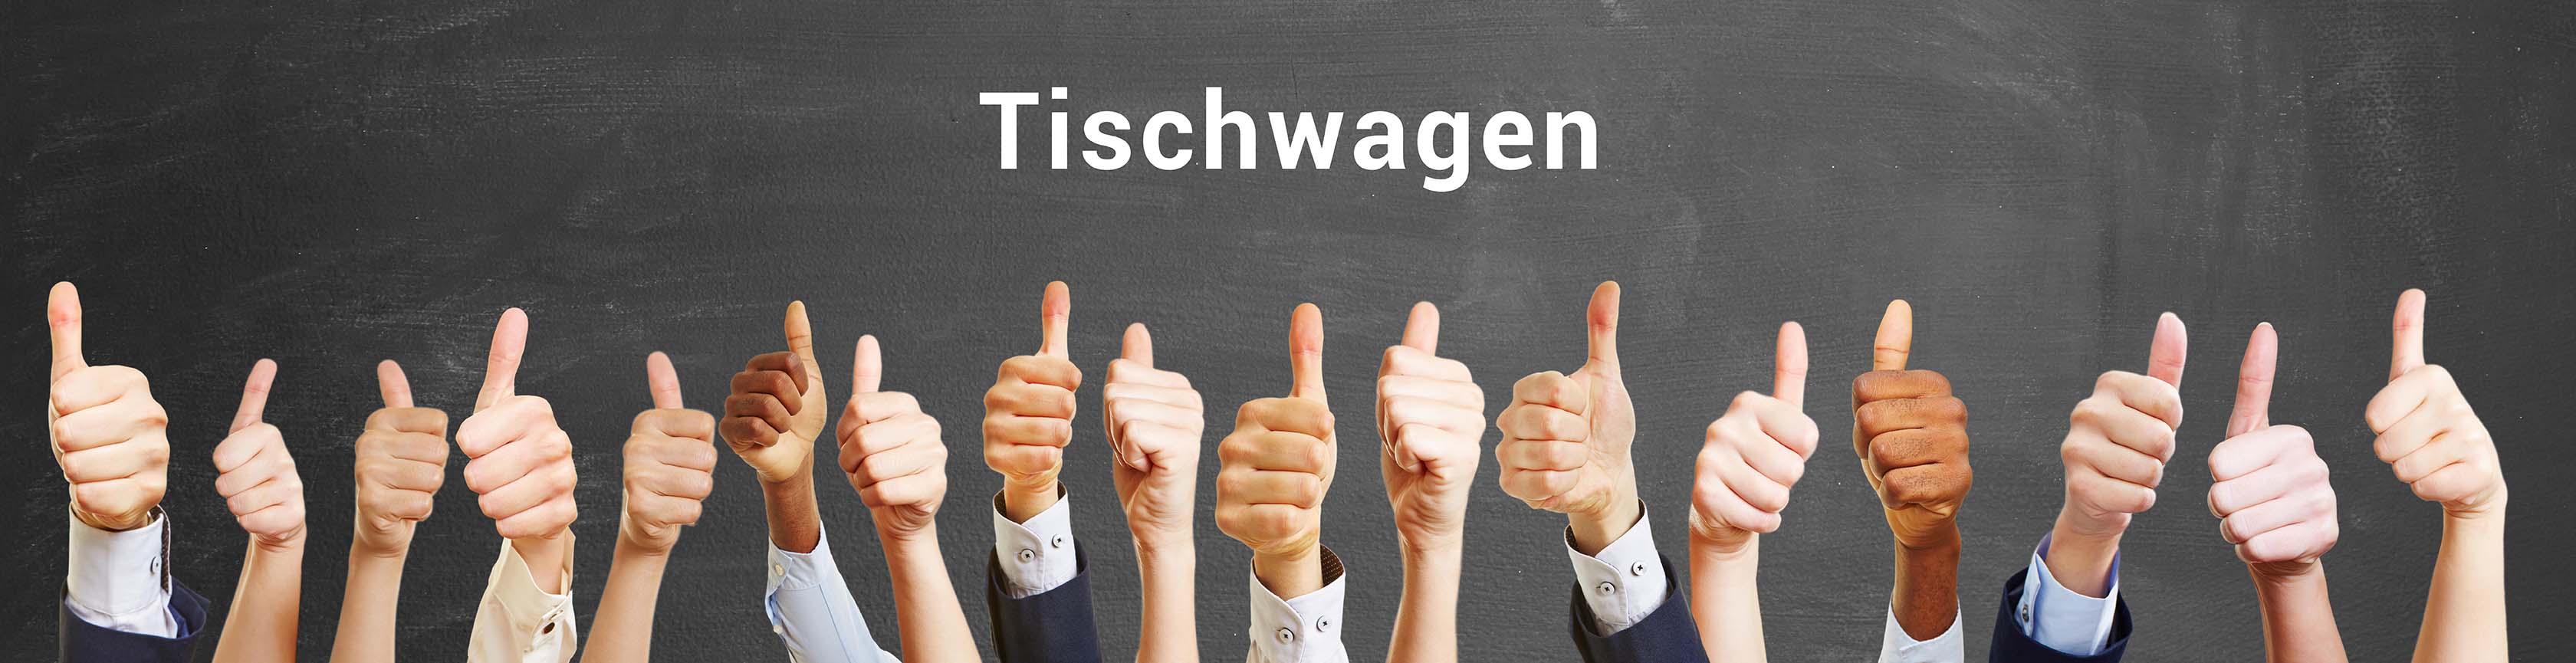 Tischwagen_BERGER-Shop_ASt_klein